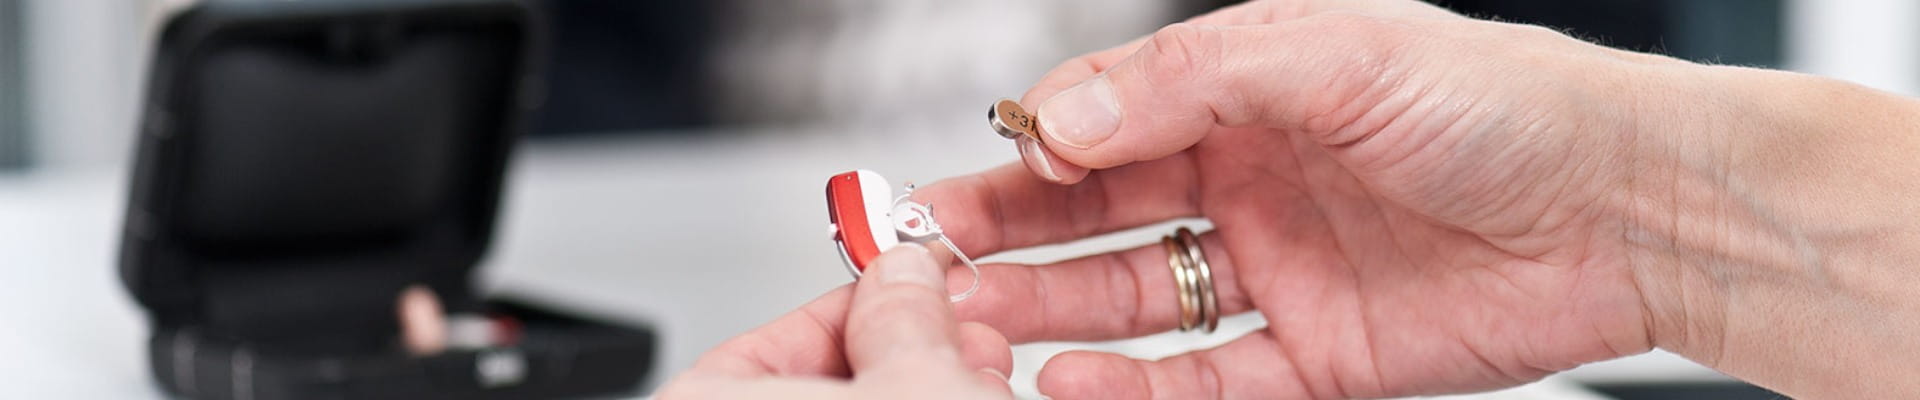 Remission Berygtet Akvarium Widex hearing aid batteries | Widex